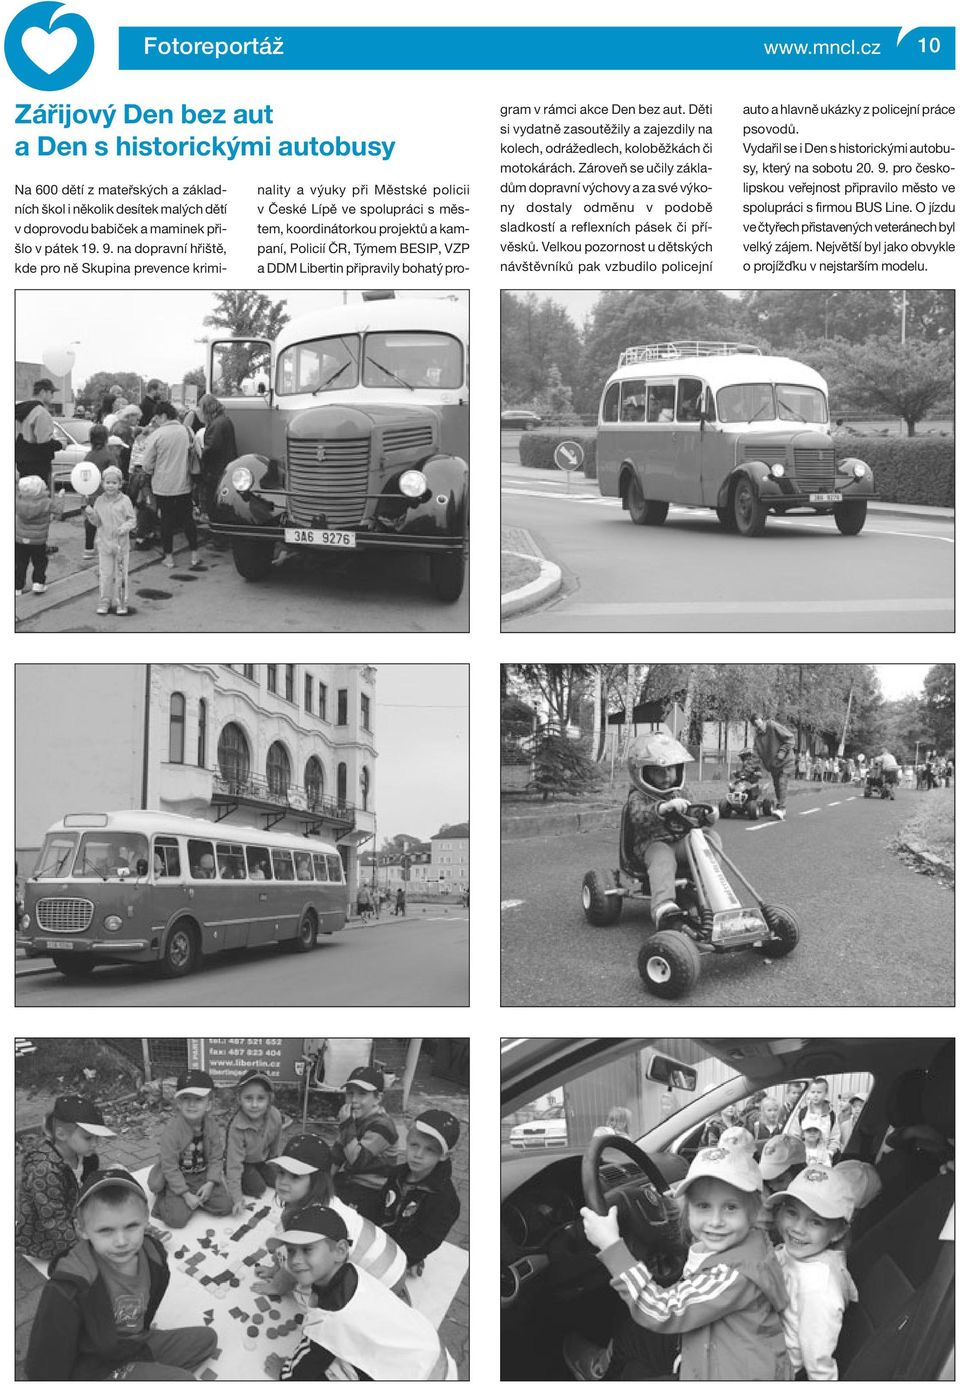 Libertin připravily bohatý program v rámci akce Den bez aut. Děti si vydatně zasoutěžily a zajezdily na kolech, odrážedlech, koloběžkách či motokárách.